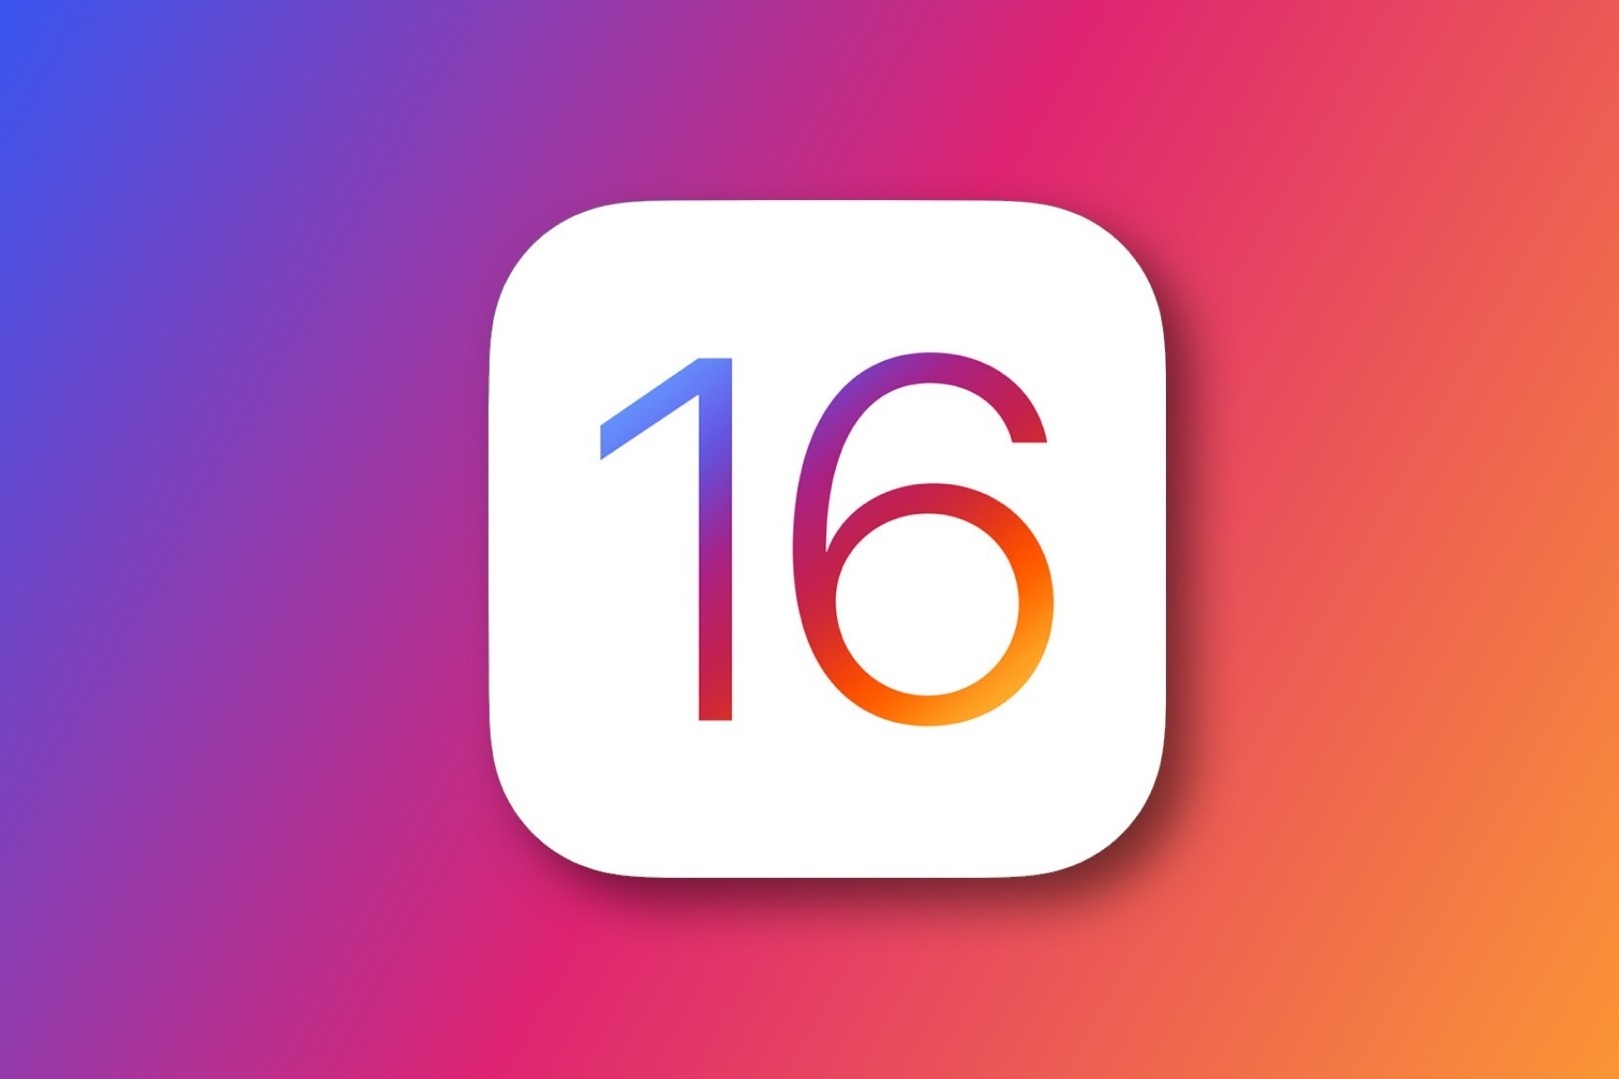 Hướng dẫn sử dụng iOS 16 với những tính năng nổi bật